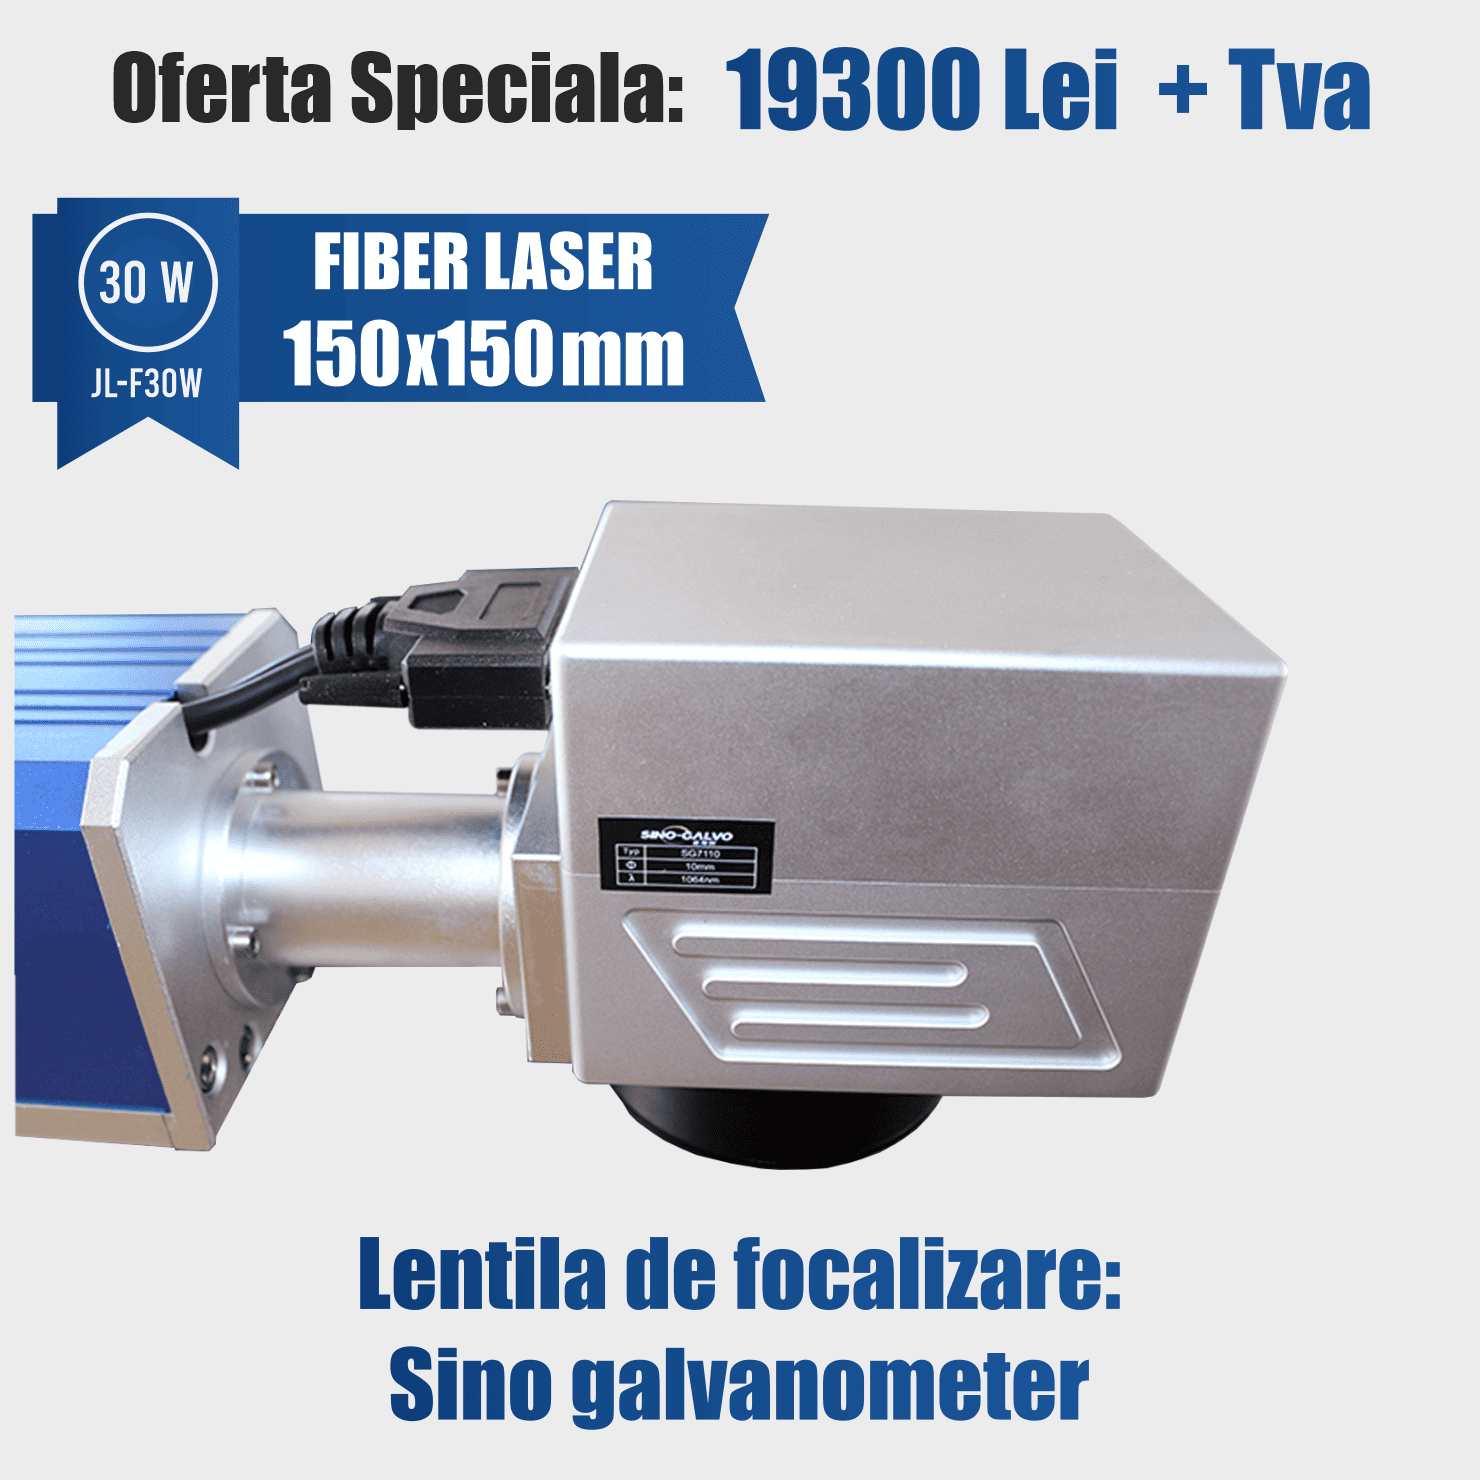 fiber laser 30w desktop